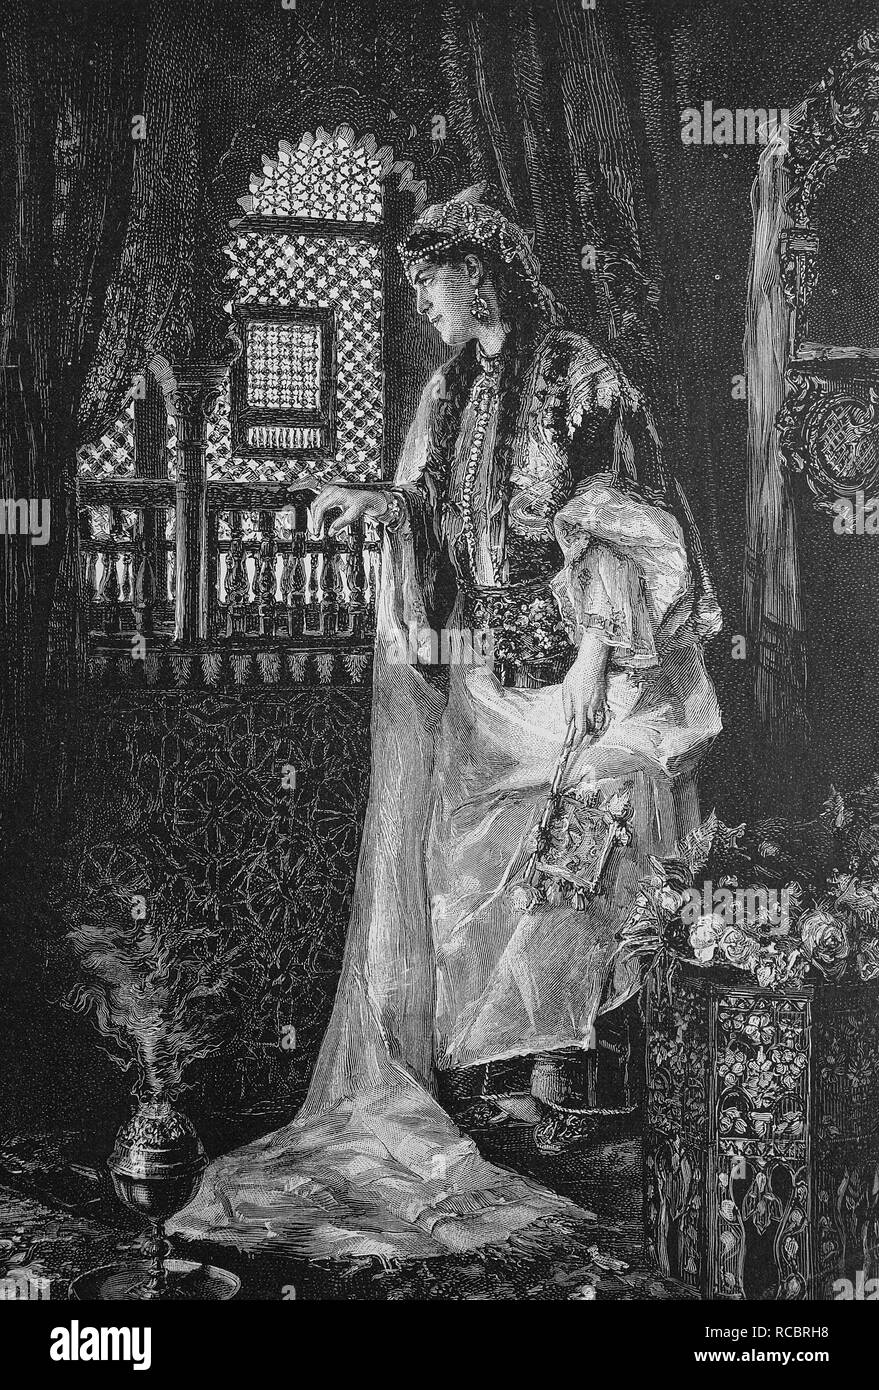 Femme au Maroc, historique de la gravure, 1880 Banque D'Images